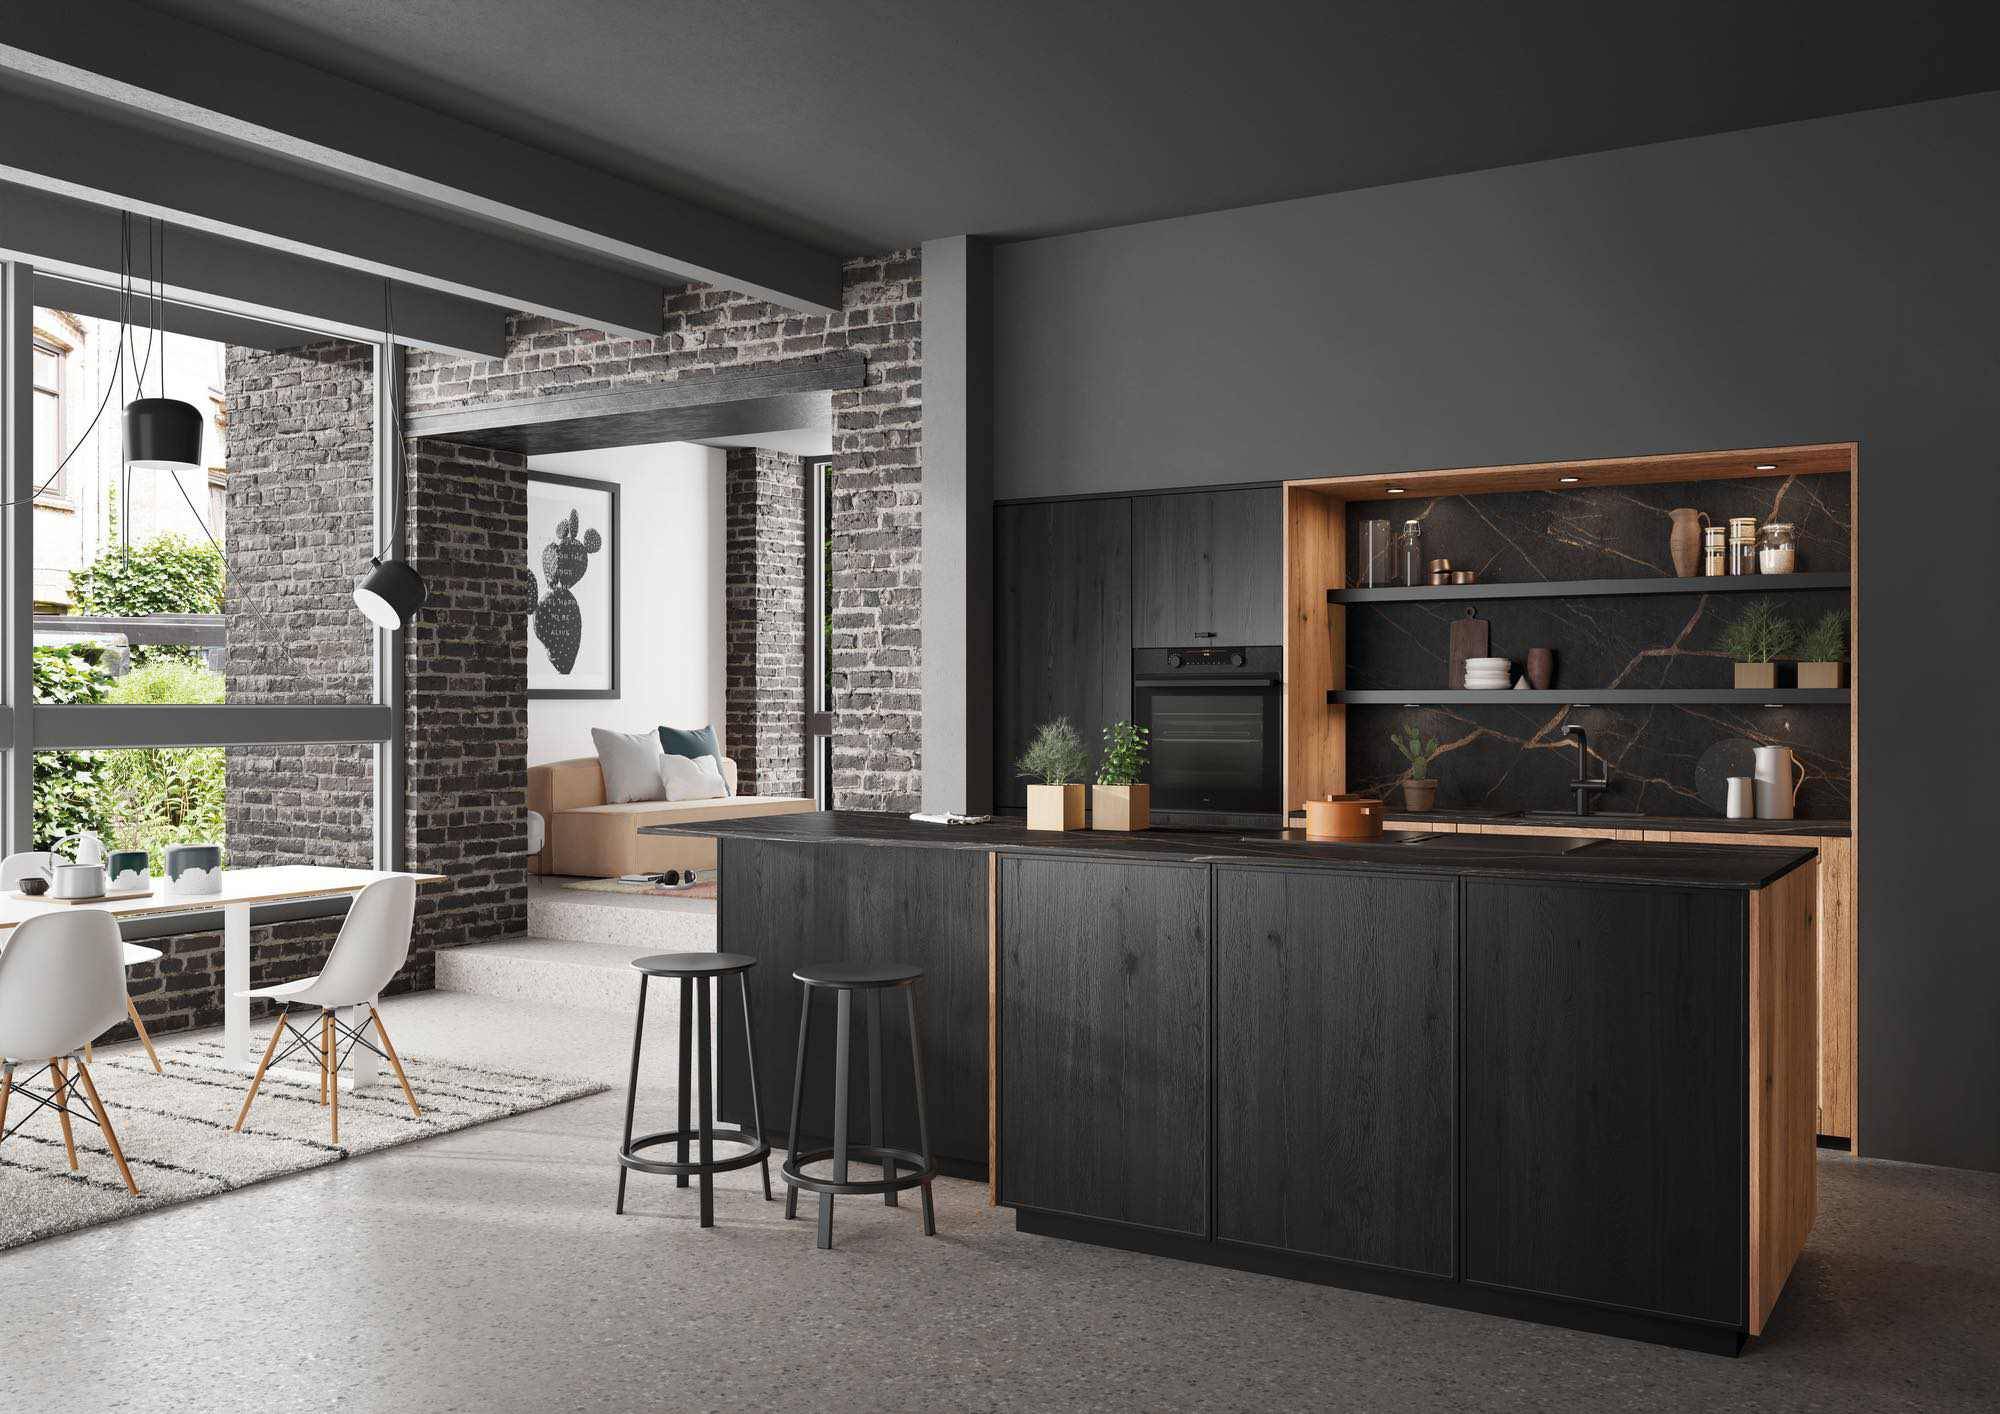 Rotpunkt Dark Wood Kitchen With Island 3 | Zara Kitchen Design, Wokingham